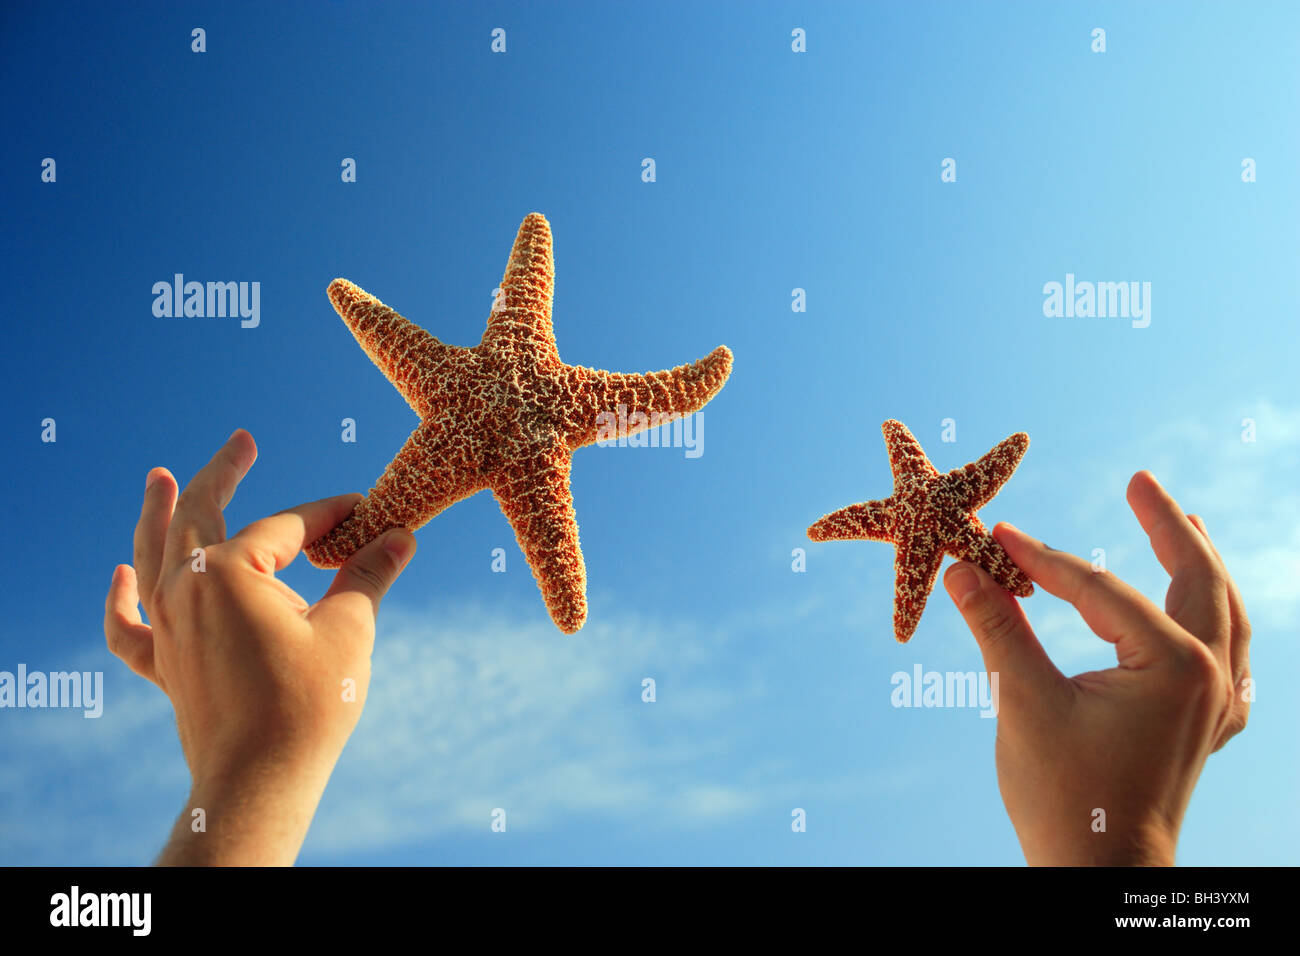 A man's hands holding une petite et une grande étoile de mer dans l'air contre un ciel d'été bleu Banque D'Images